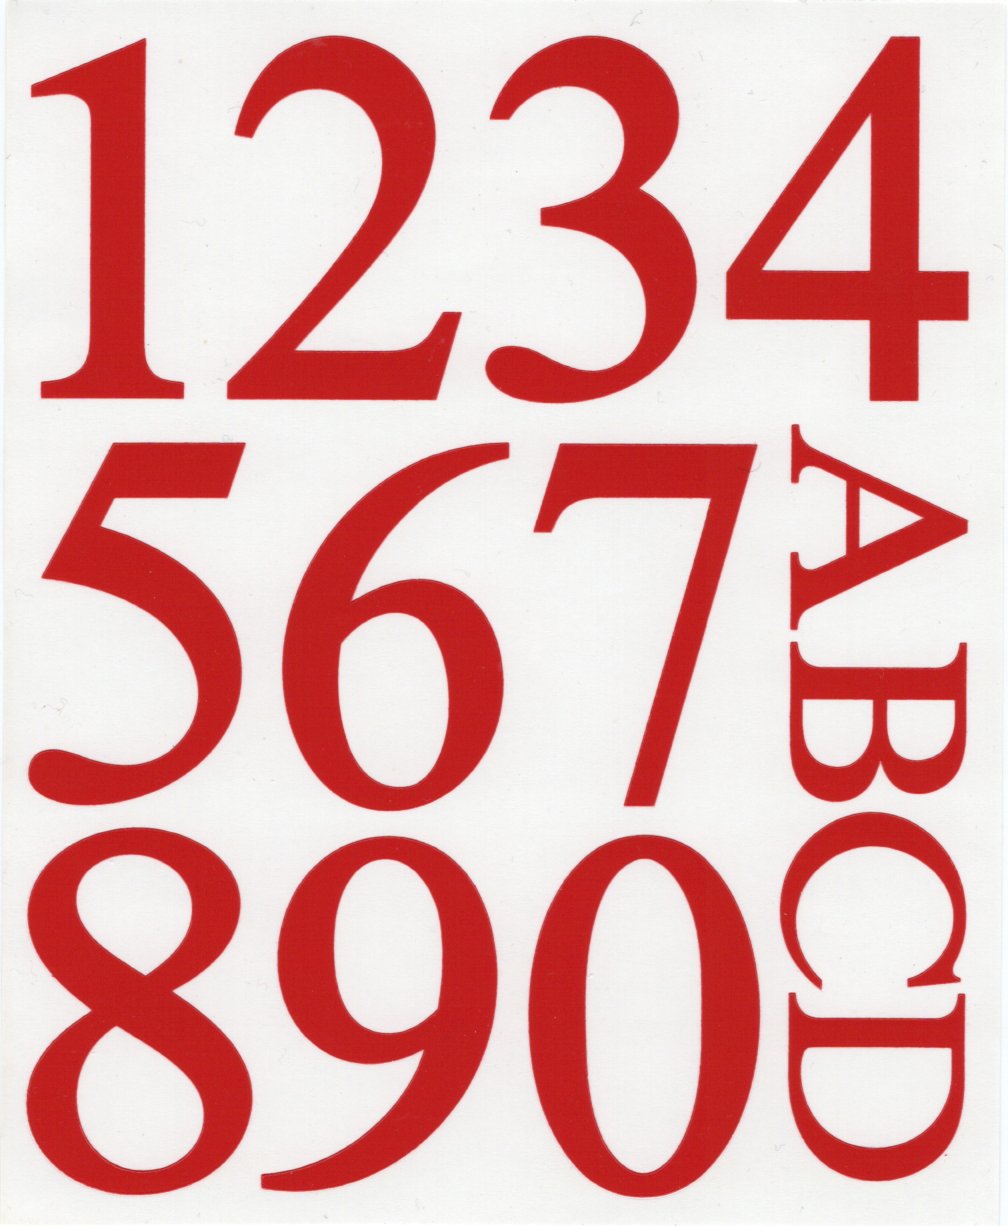 Pickup Brievenbuscijfers en brievenbus letters - huisnummers - rood - hoogglans - velletje met cijfers 0 tm 9 en letters A tm D - PS10305002 EAN 8715119101396 Deze brievenbuscijfers zijn ook in zwart verkrijgbaar. Zelfklevende vinyl stickers